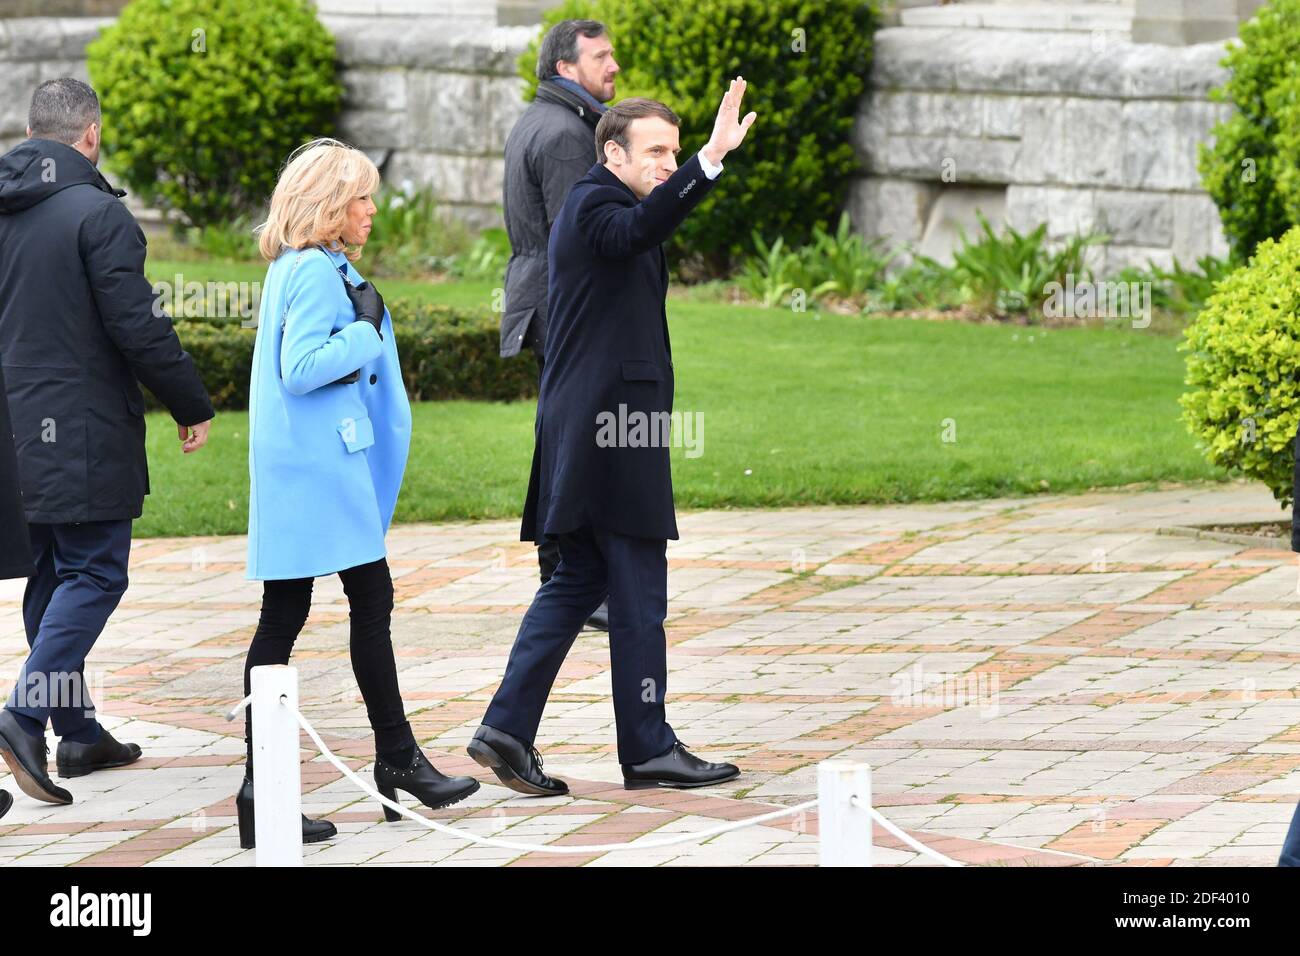 Il presidente francese Emmanuel Macron e sua moglie Brigitte Macron arrivano a un seggio durante il primo turno delle elezioni comunali a le Touquet, in Francia, il 15 marzo 2020. Foto di Francis Petit/ABACAPRESS.COM Foto Stock